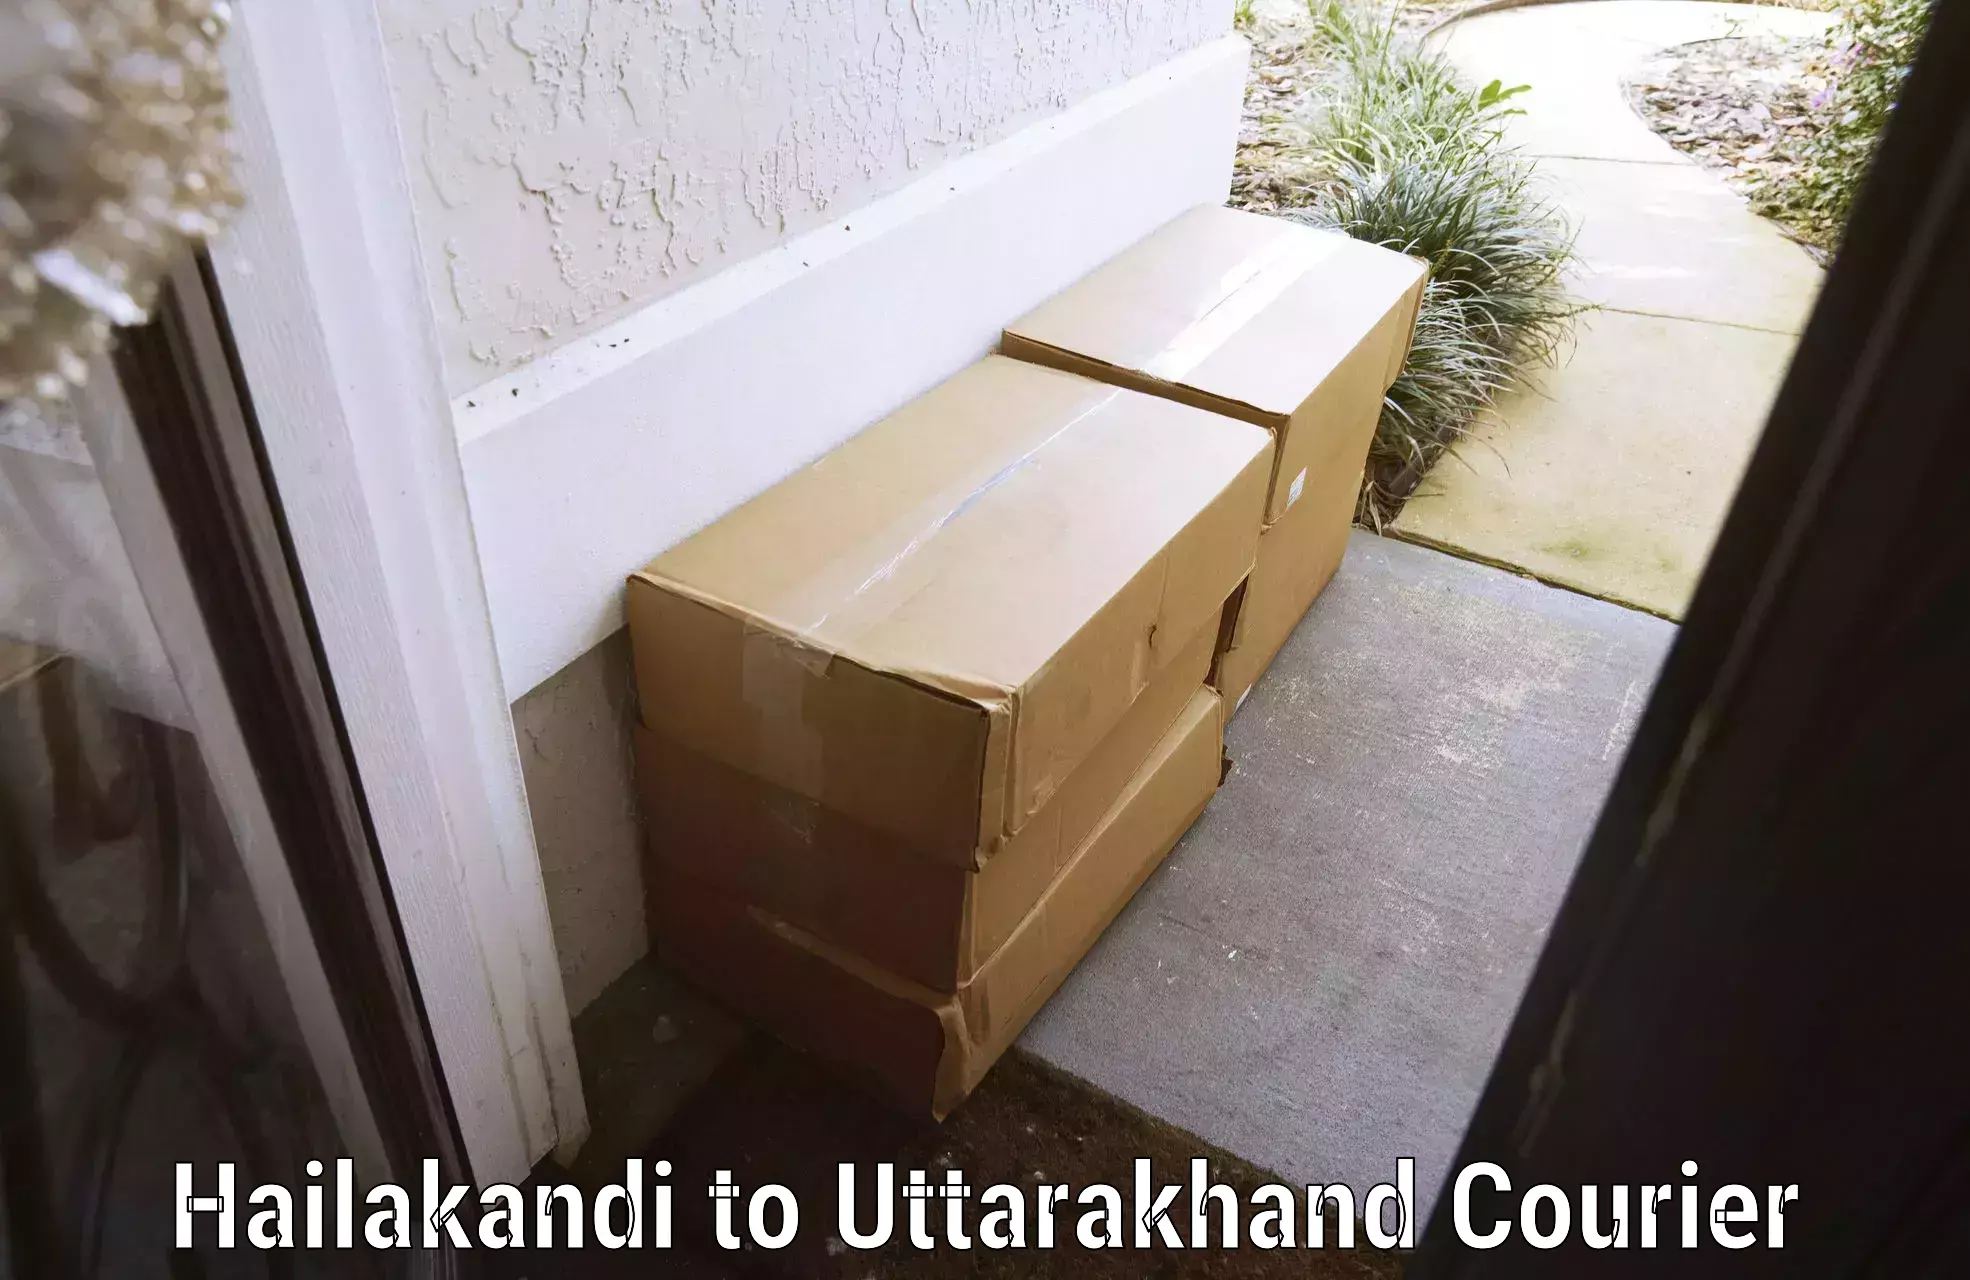 Customized luggage delivery Hailakandi to Doiwala